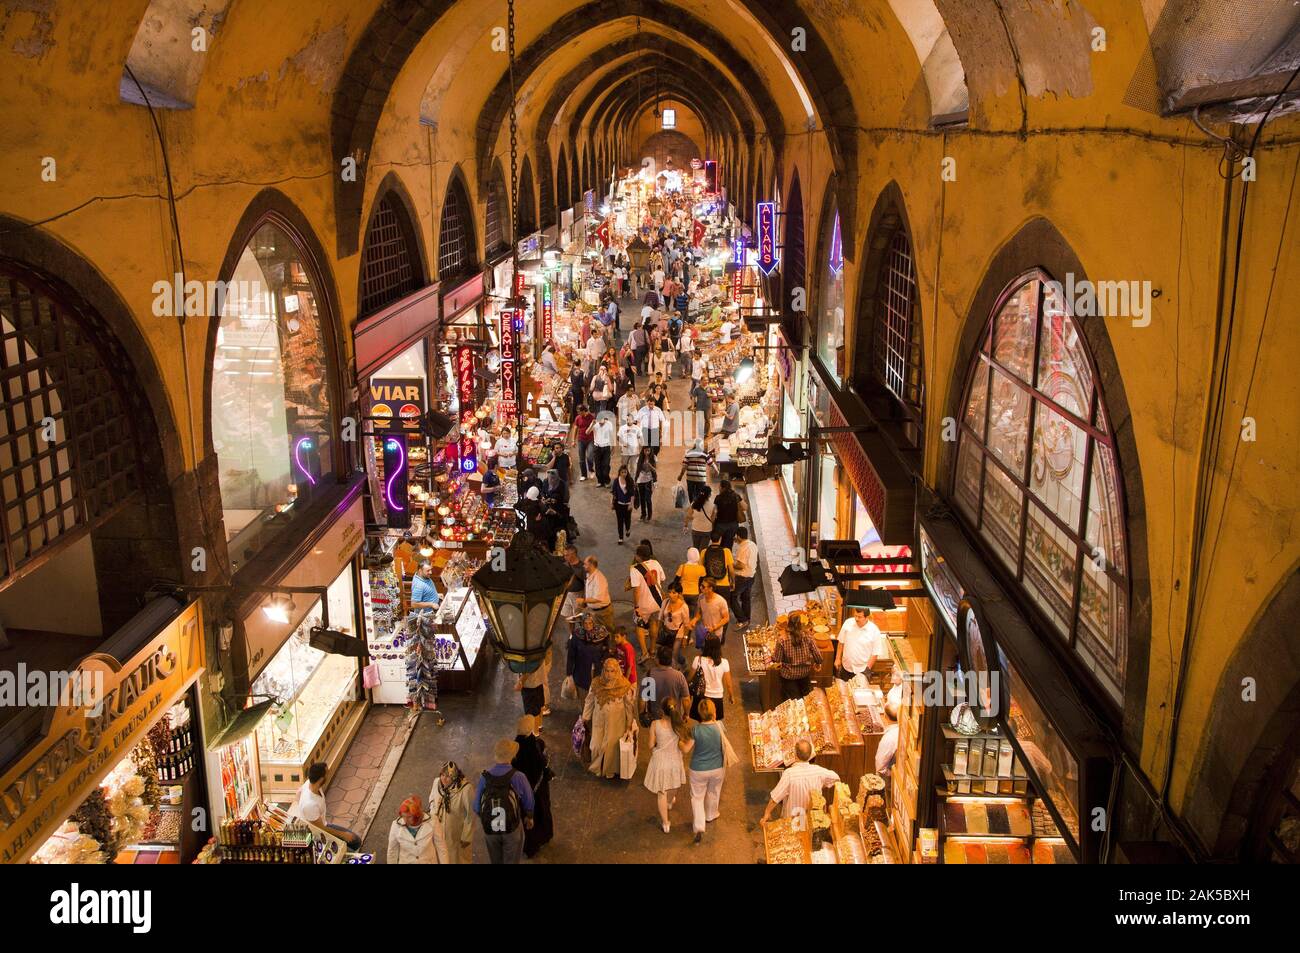 Stadtteil Eminoenue: Blick in den Gewuerzmarkt, Istanbul | Utilizzo di tutto il mondo Foto Stock